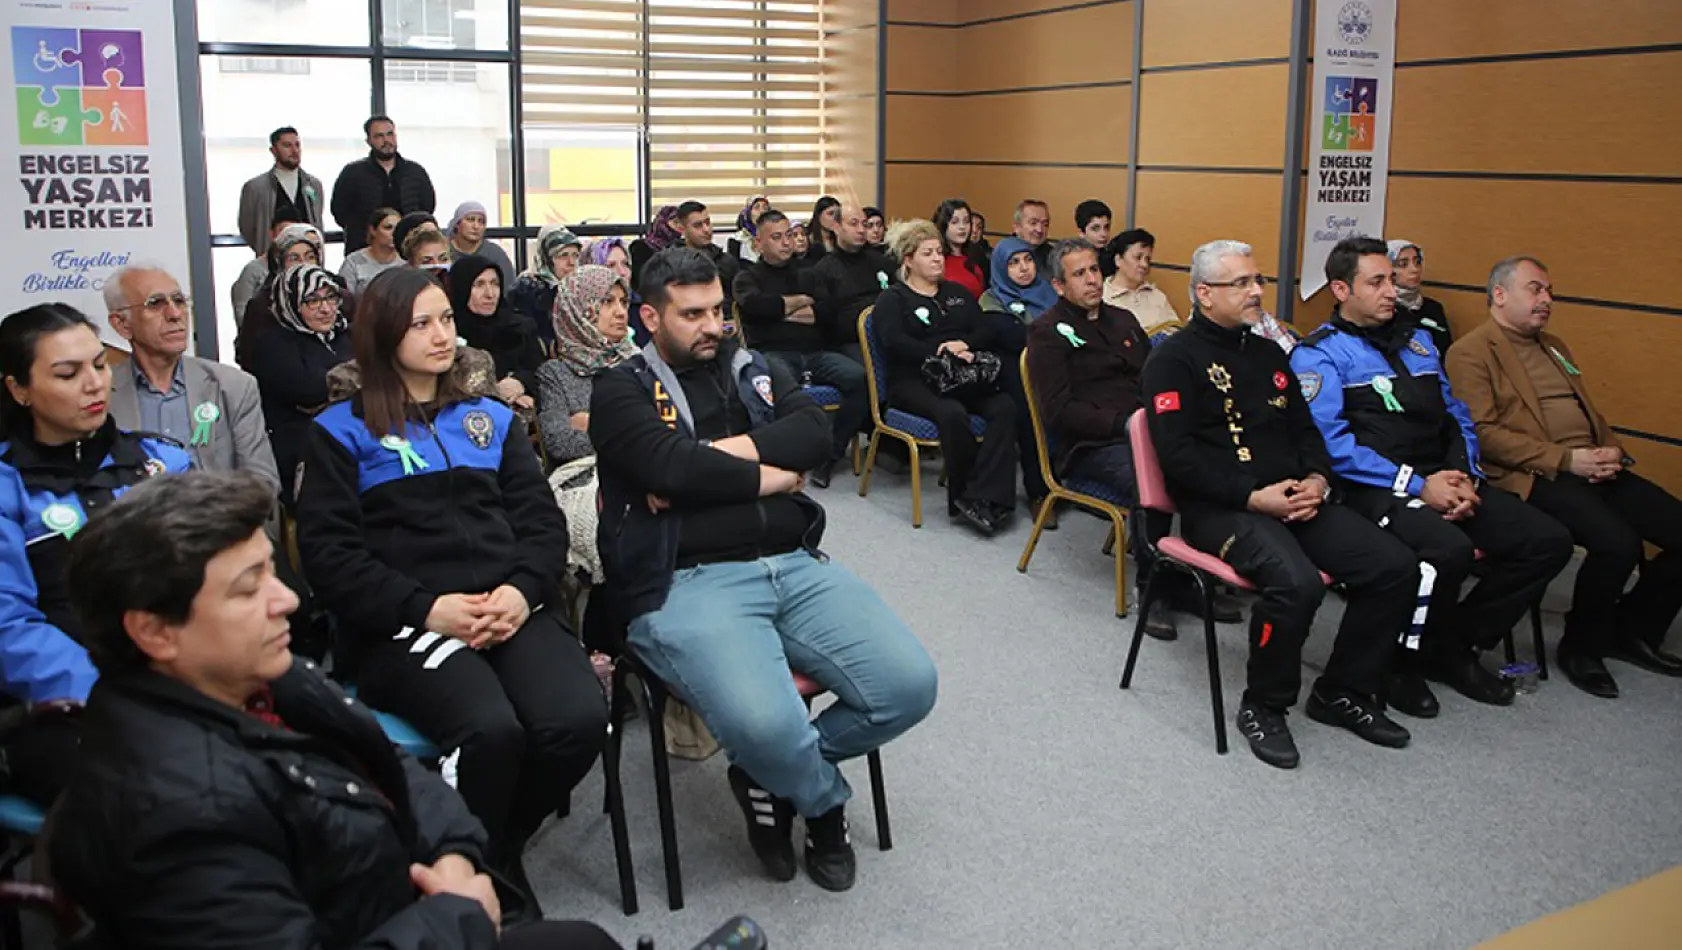 Elazığ Belediyesi, Bağımlılık ve Alkol Bağımlılığı Konulu Seminer Düzenledi